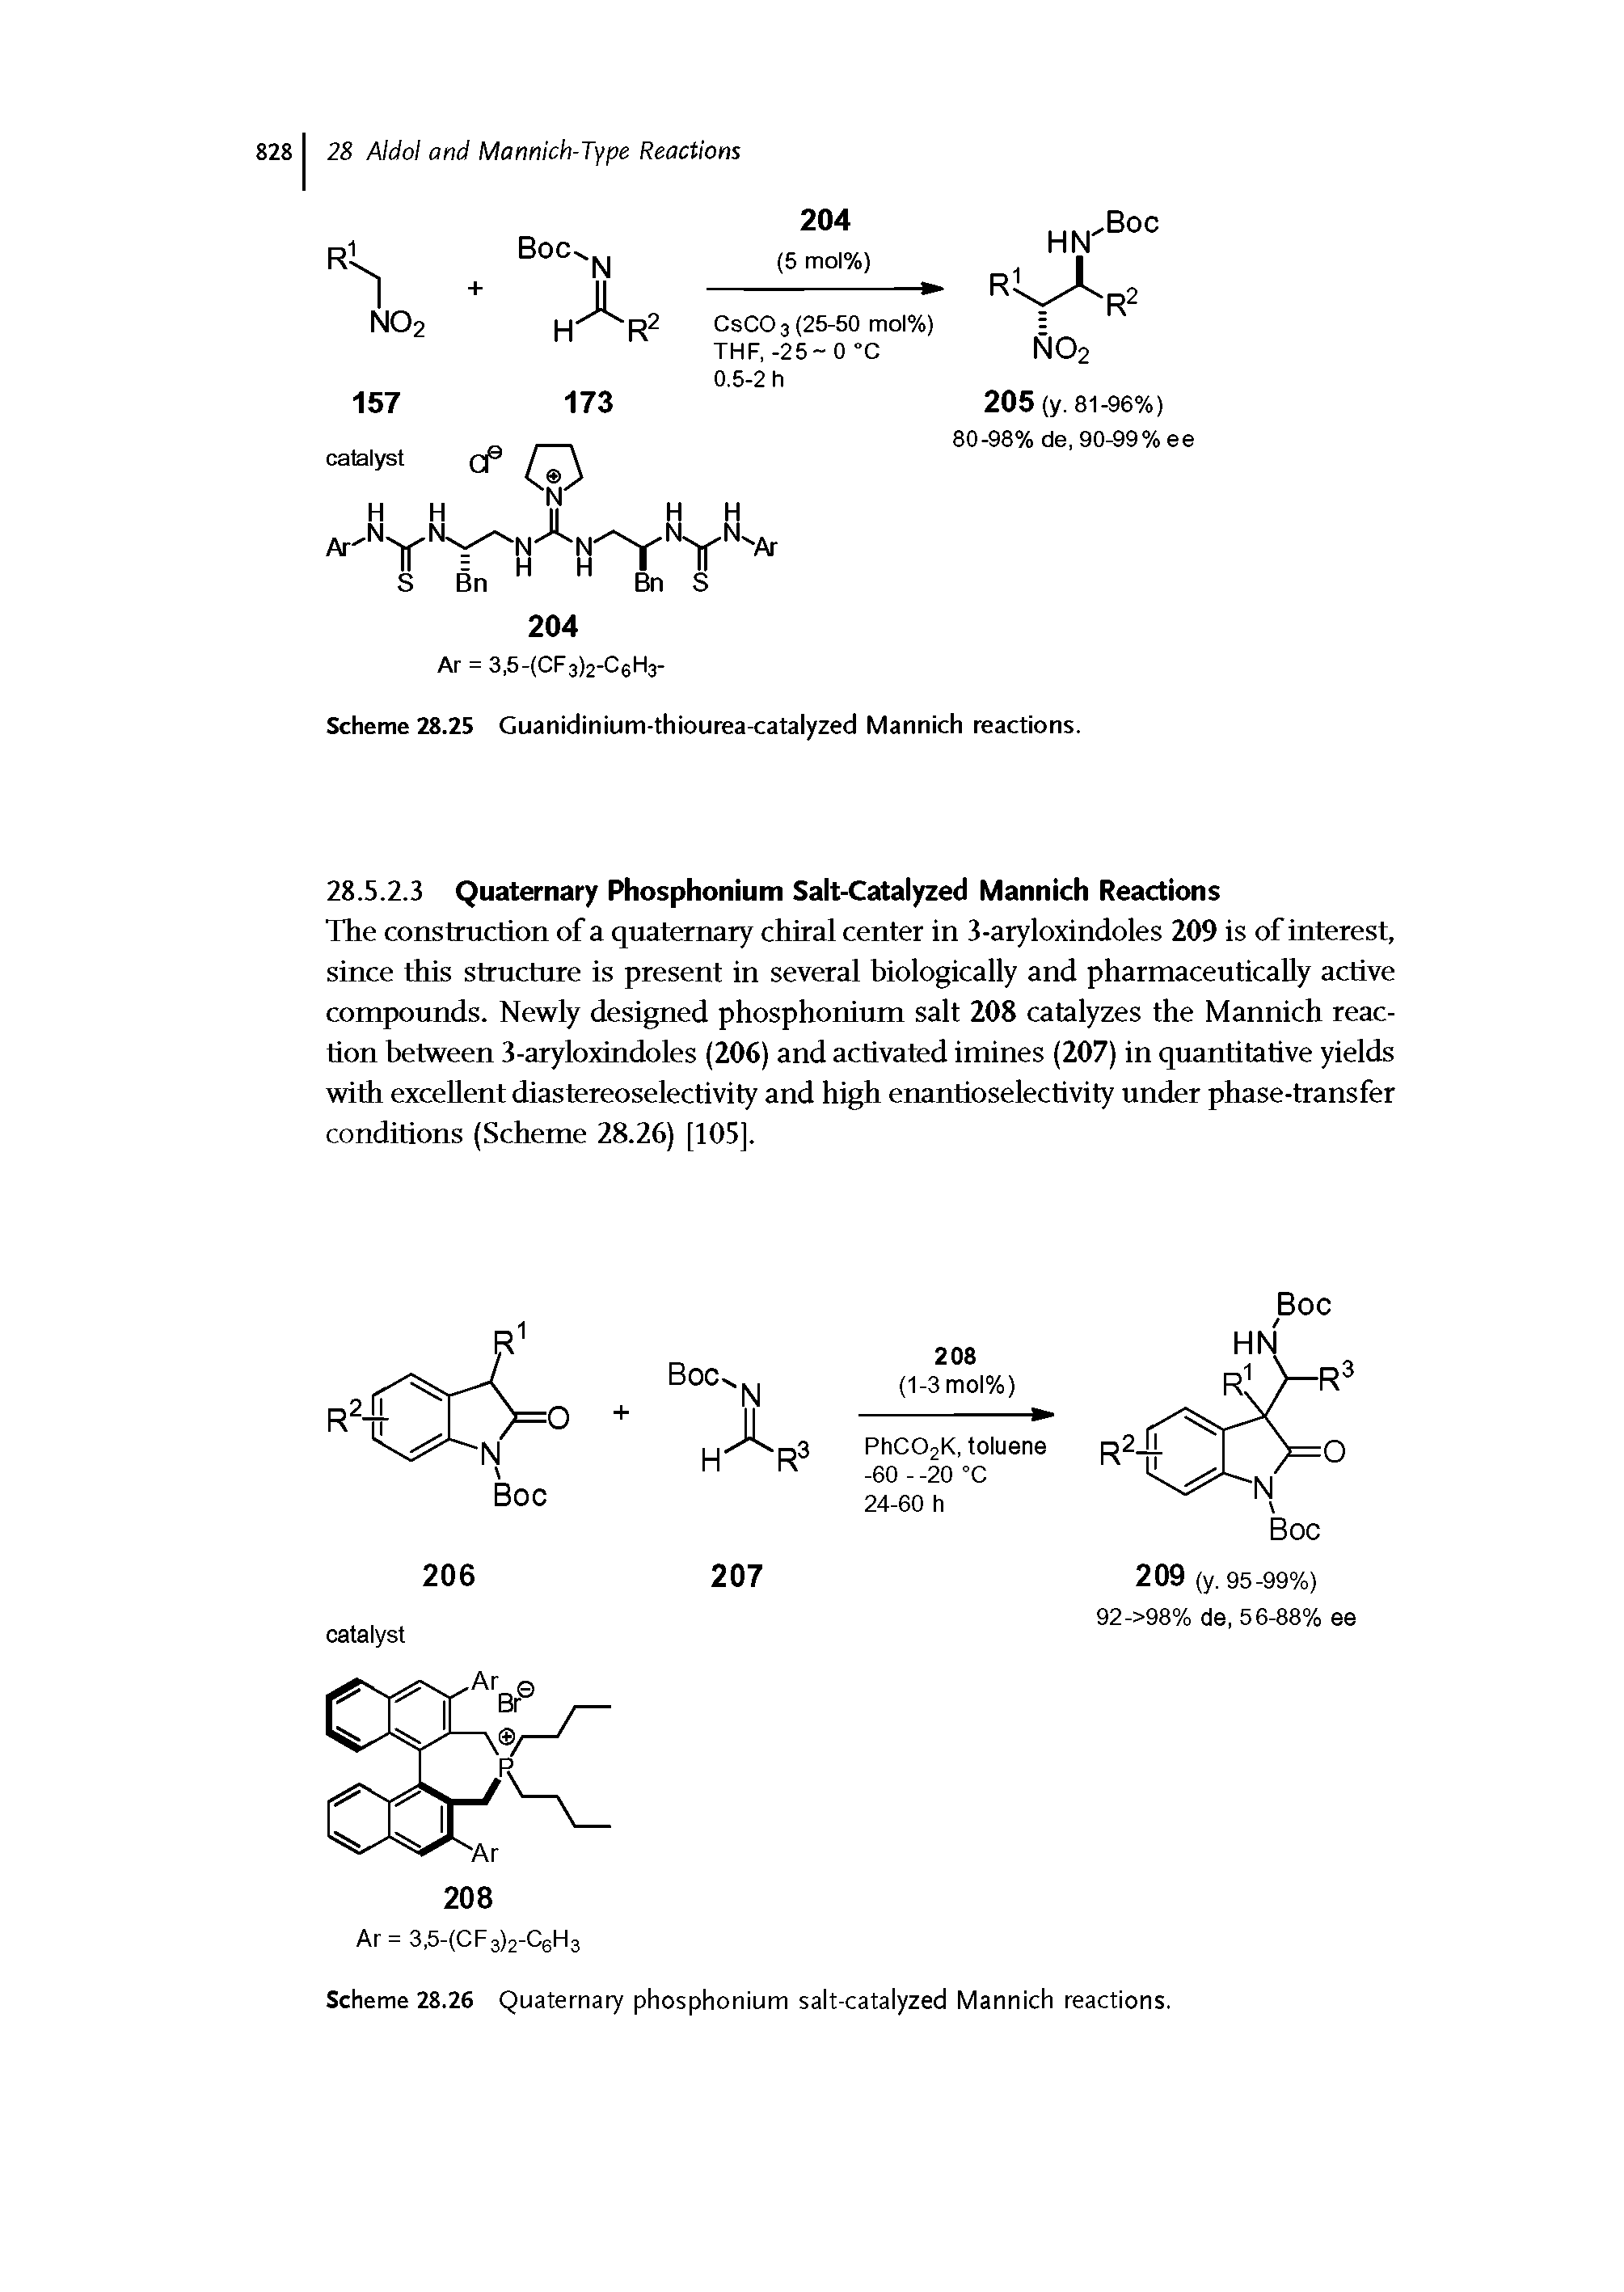 Scheme 28.26 Quaternary phosphonium salt-catalyzed Mannich reactions.